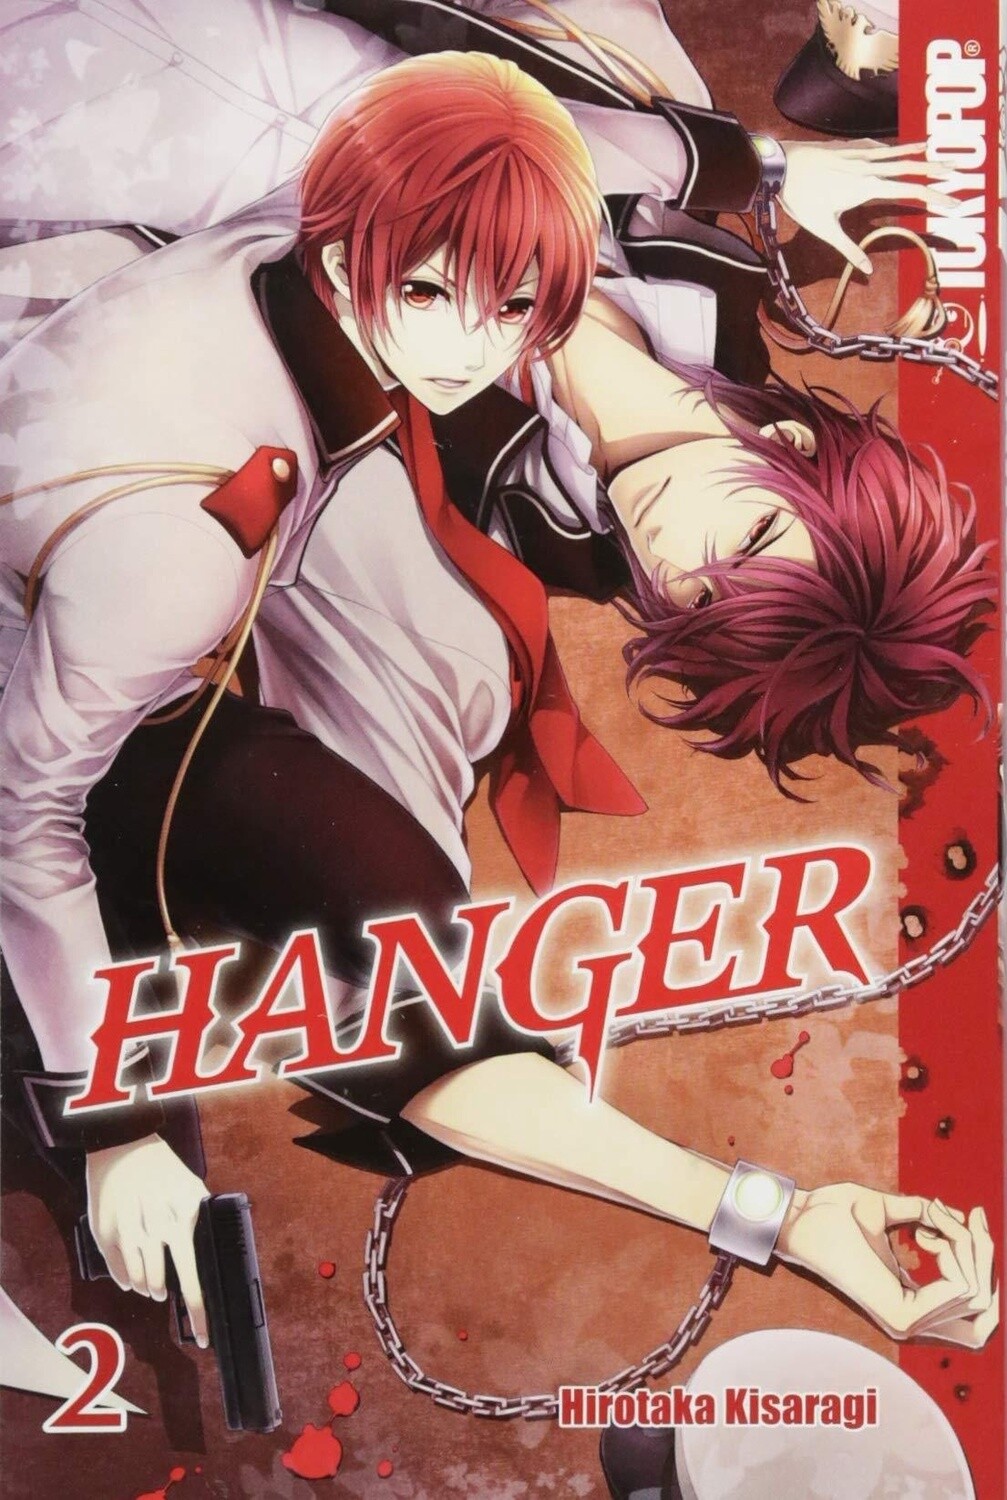 Hanger Vol. 2